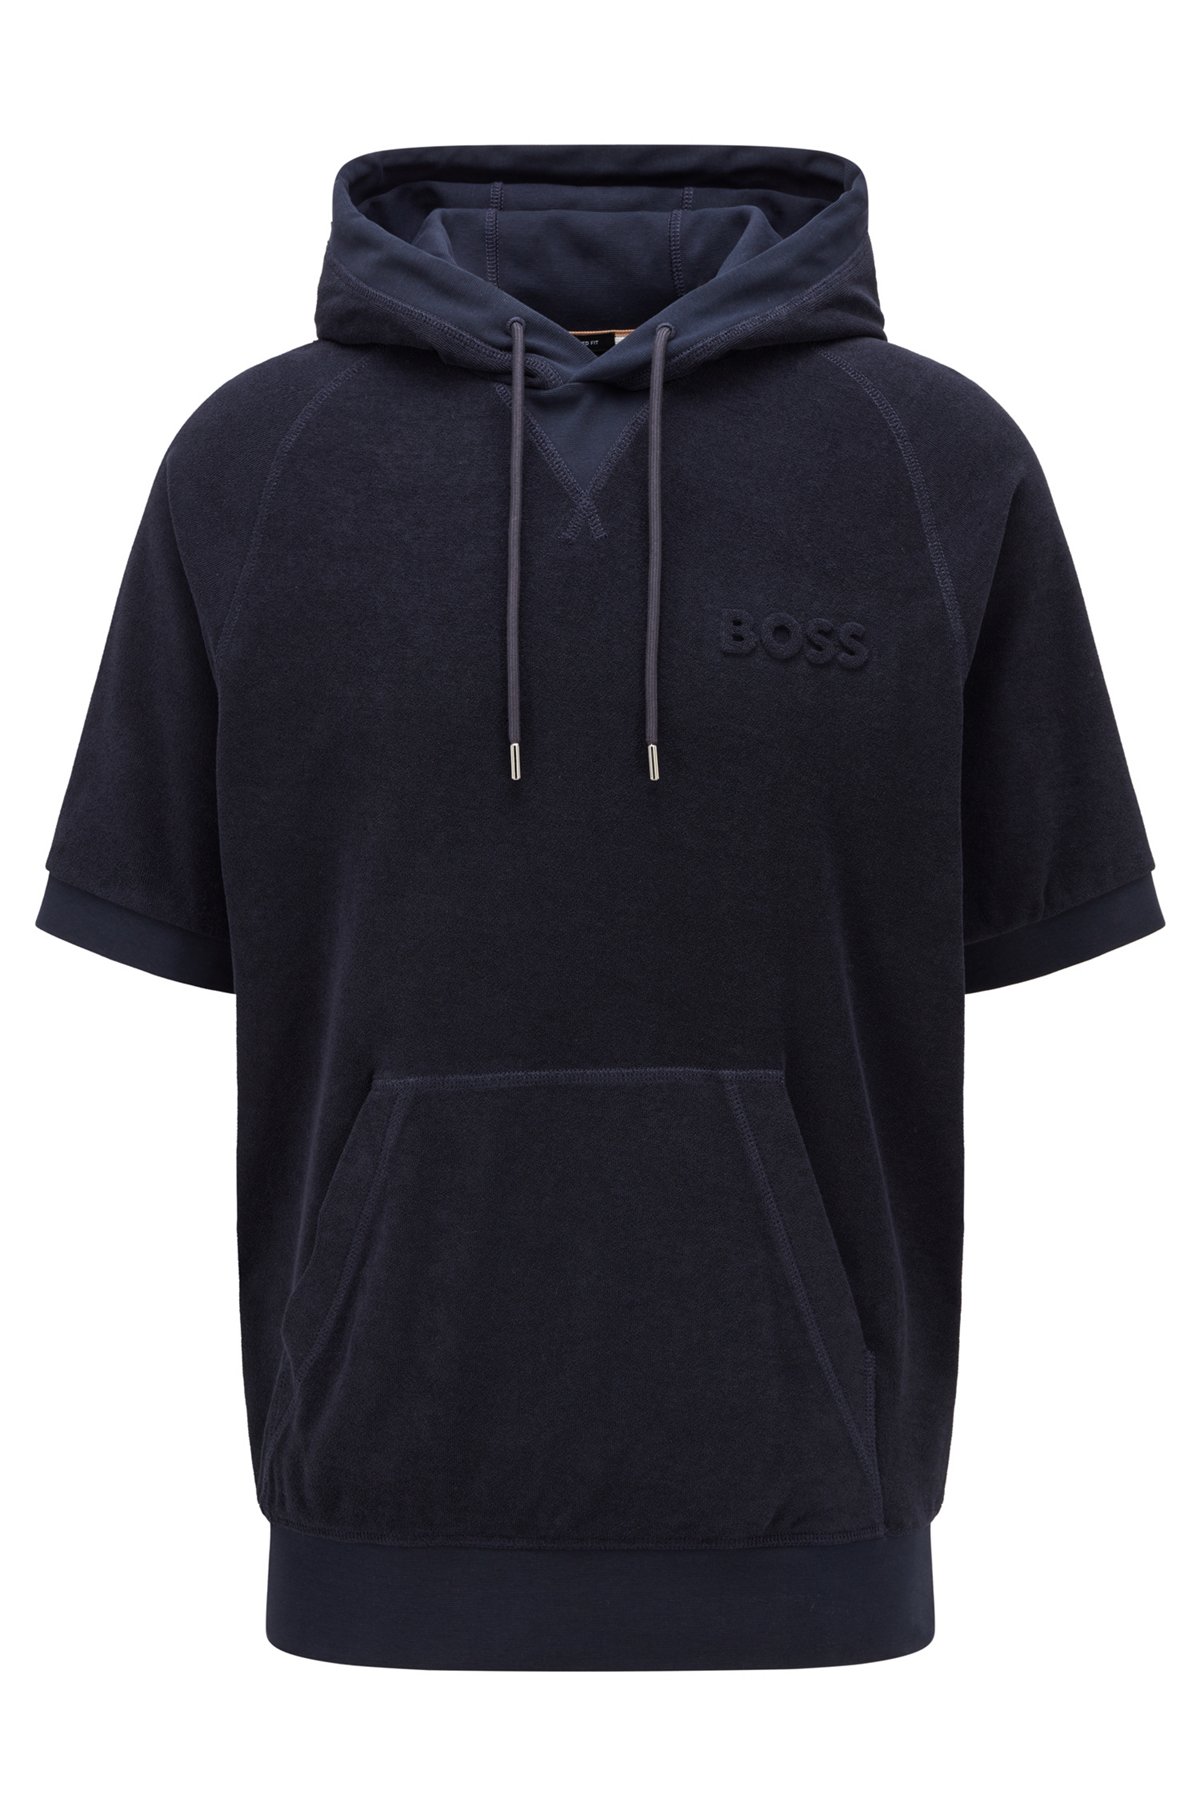 Short-sleeved hooded sweatshirt in cotton-terry toweling, Dark Blue